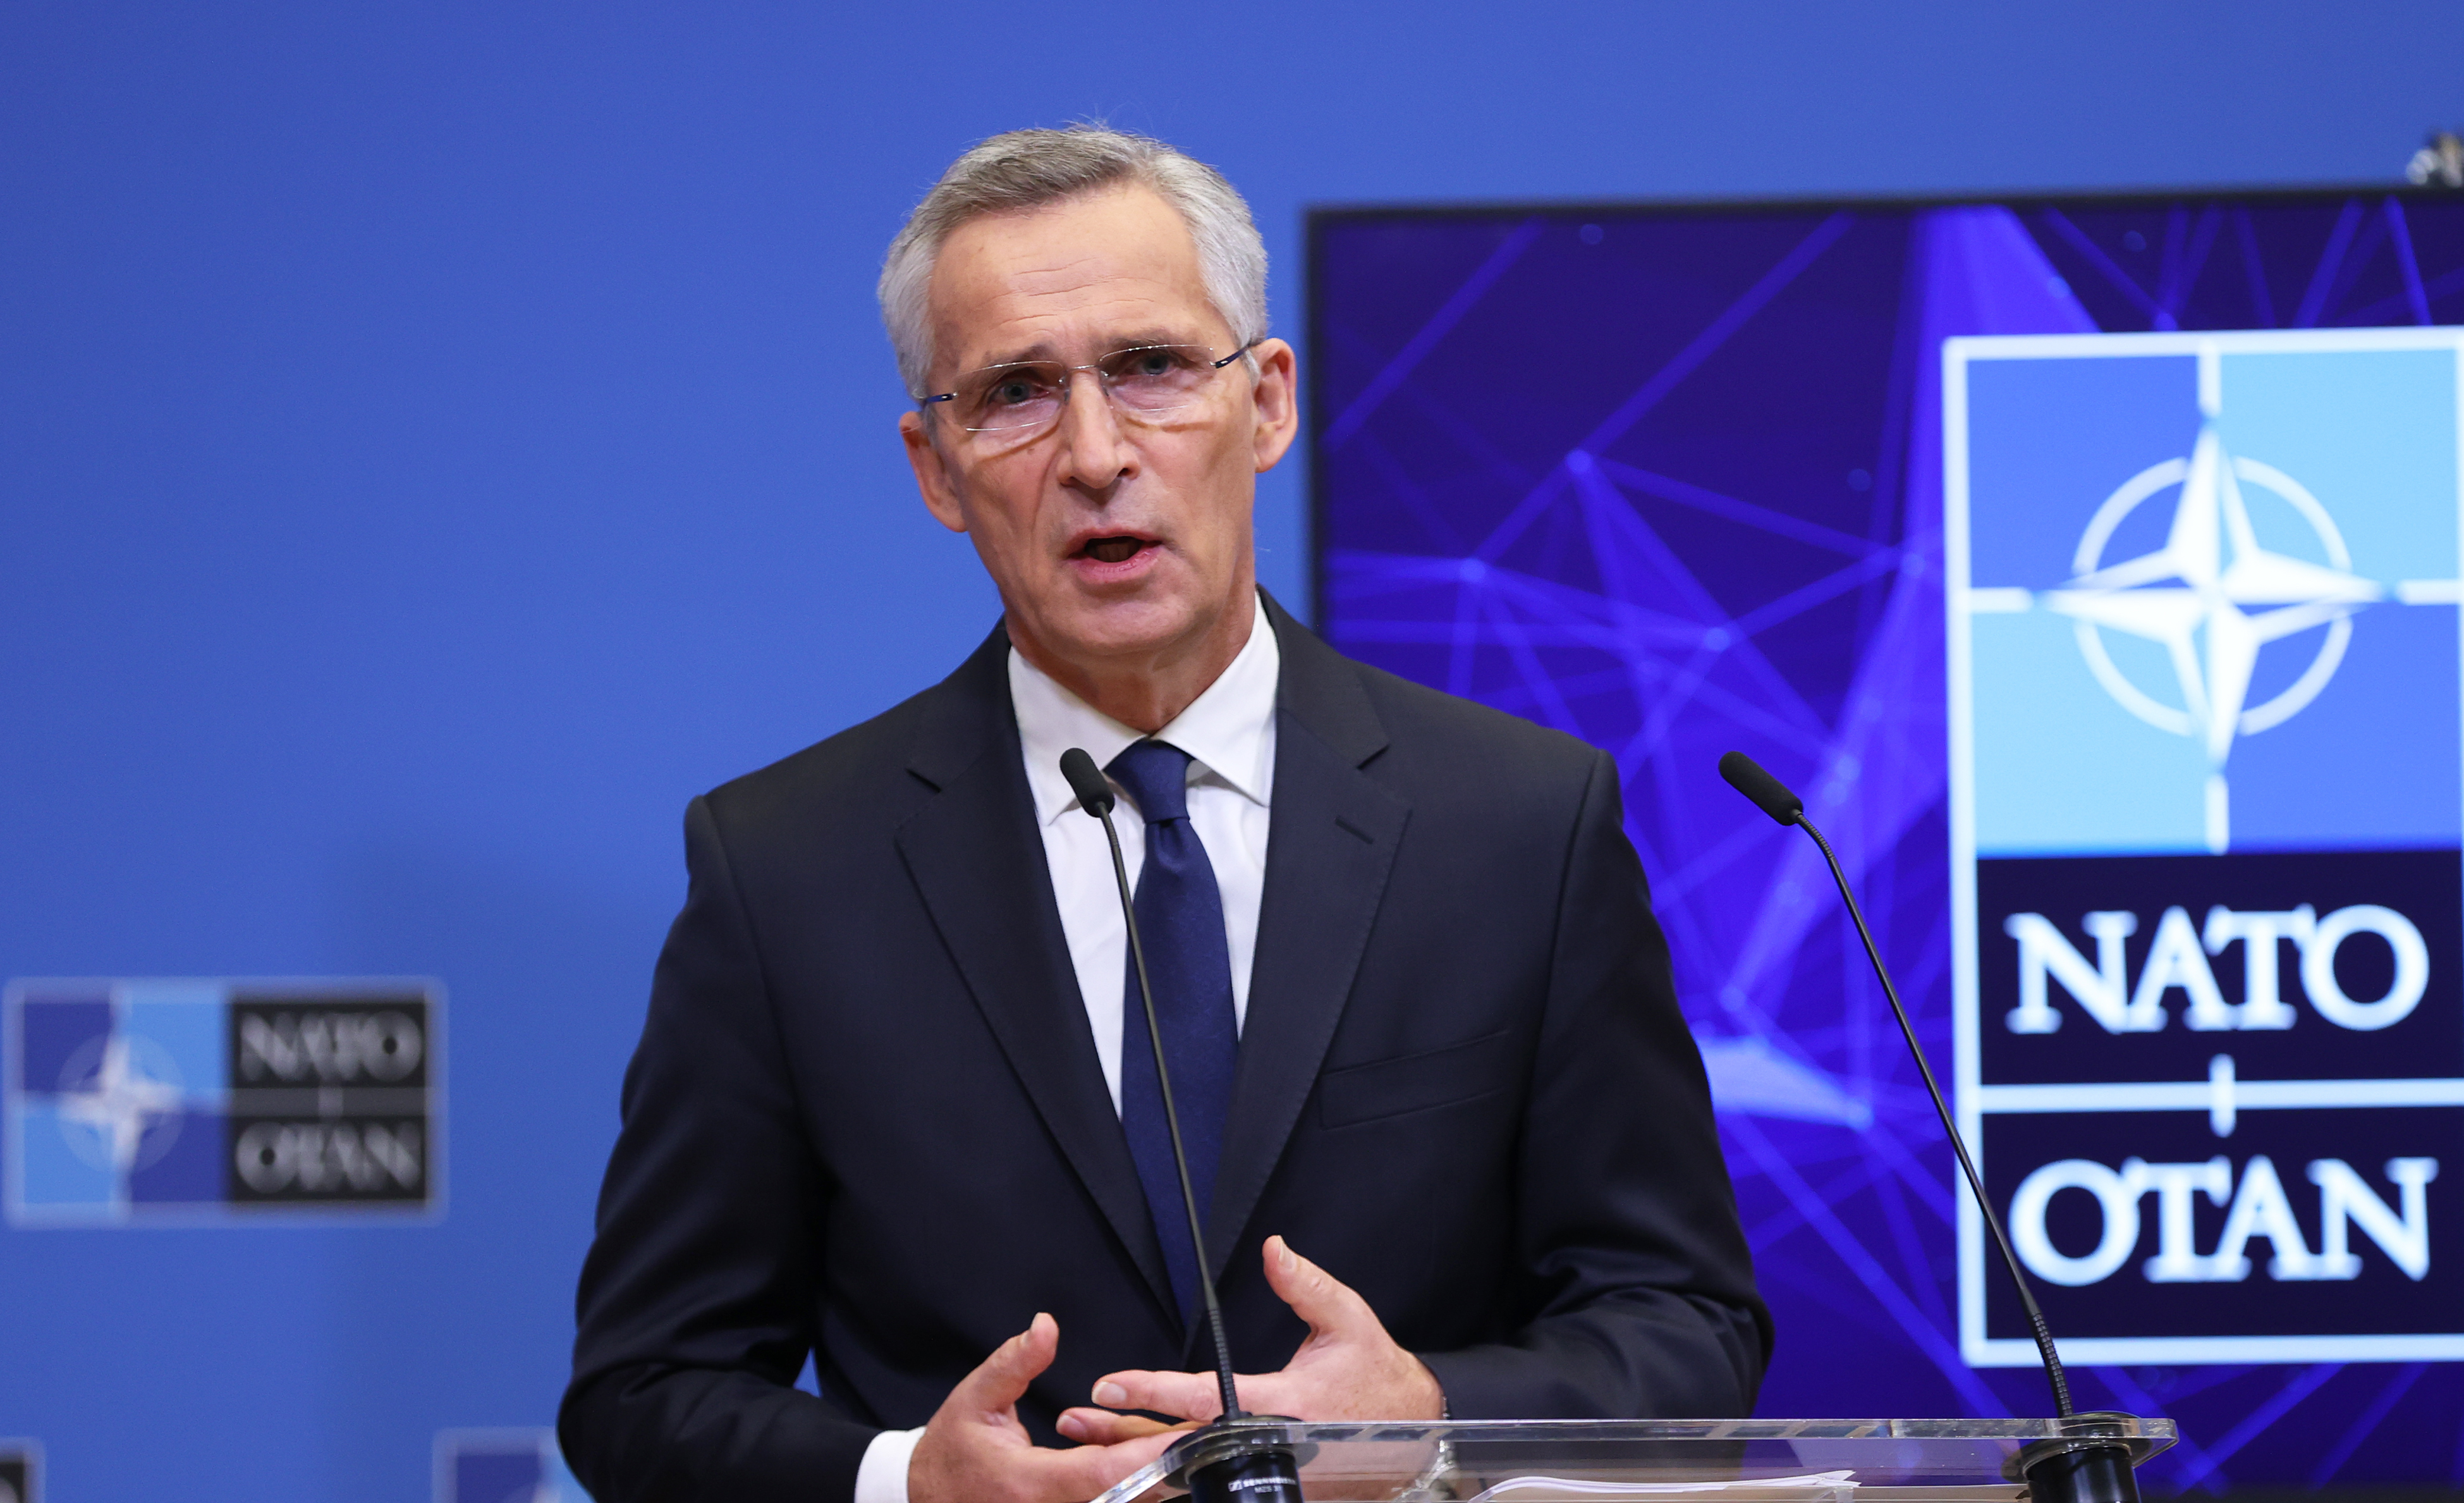 Militärausgaben - NATO-Generalsekretär Stoltenberg erwartet Anhebung des Zwei-Prozent-Ziels